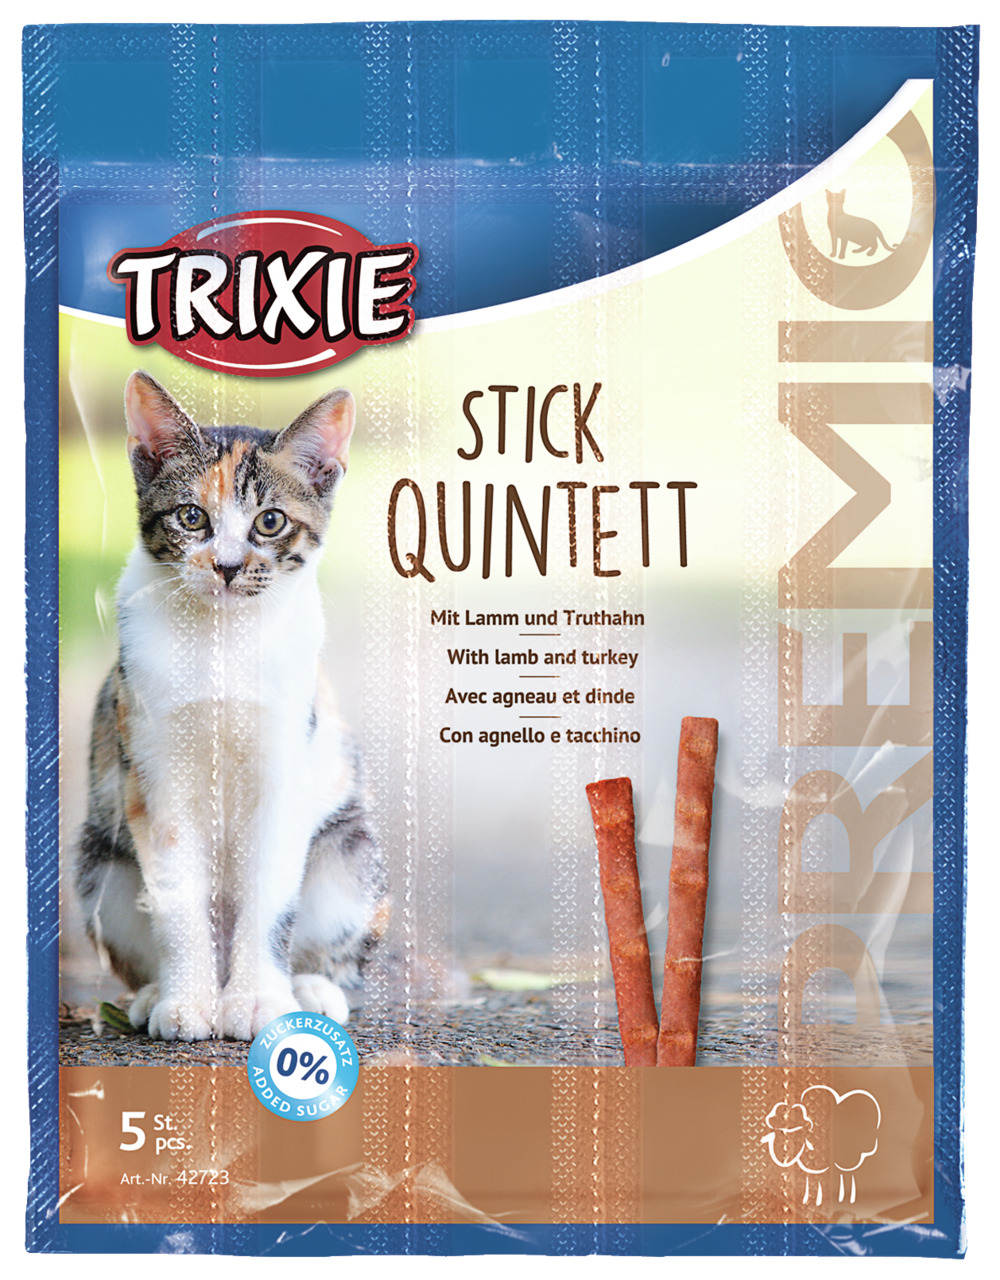 Sparpaket 2 x 5 g Trixie Premio Stick Quintett mit Lamm und Truthahn Katzen Snack